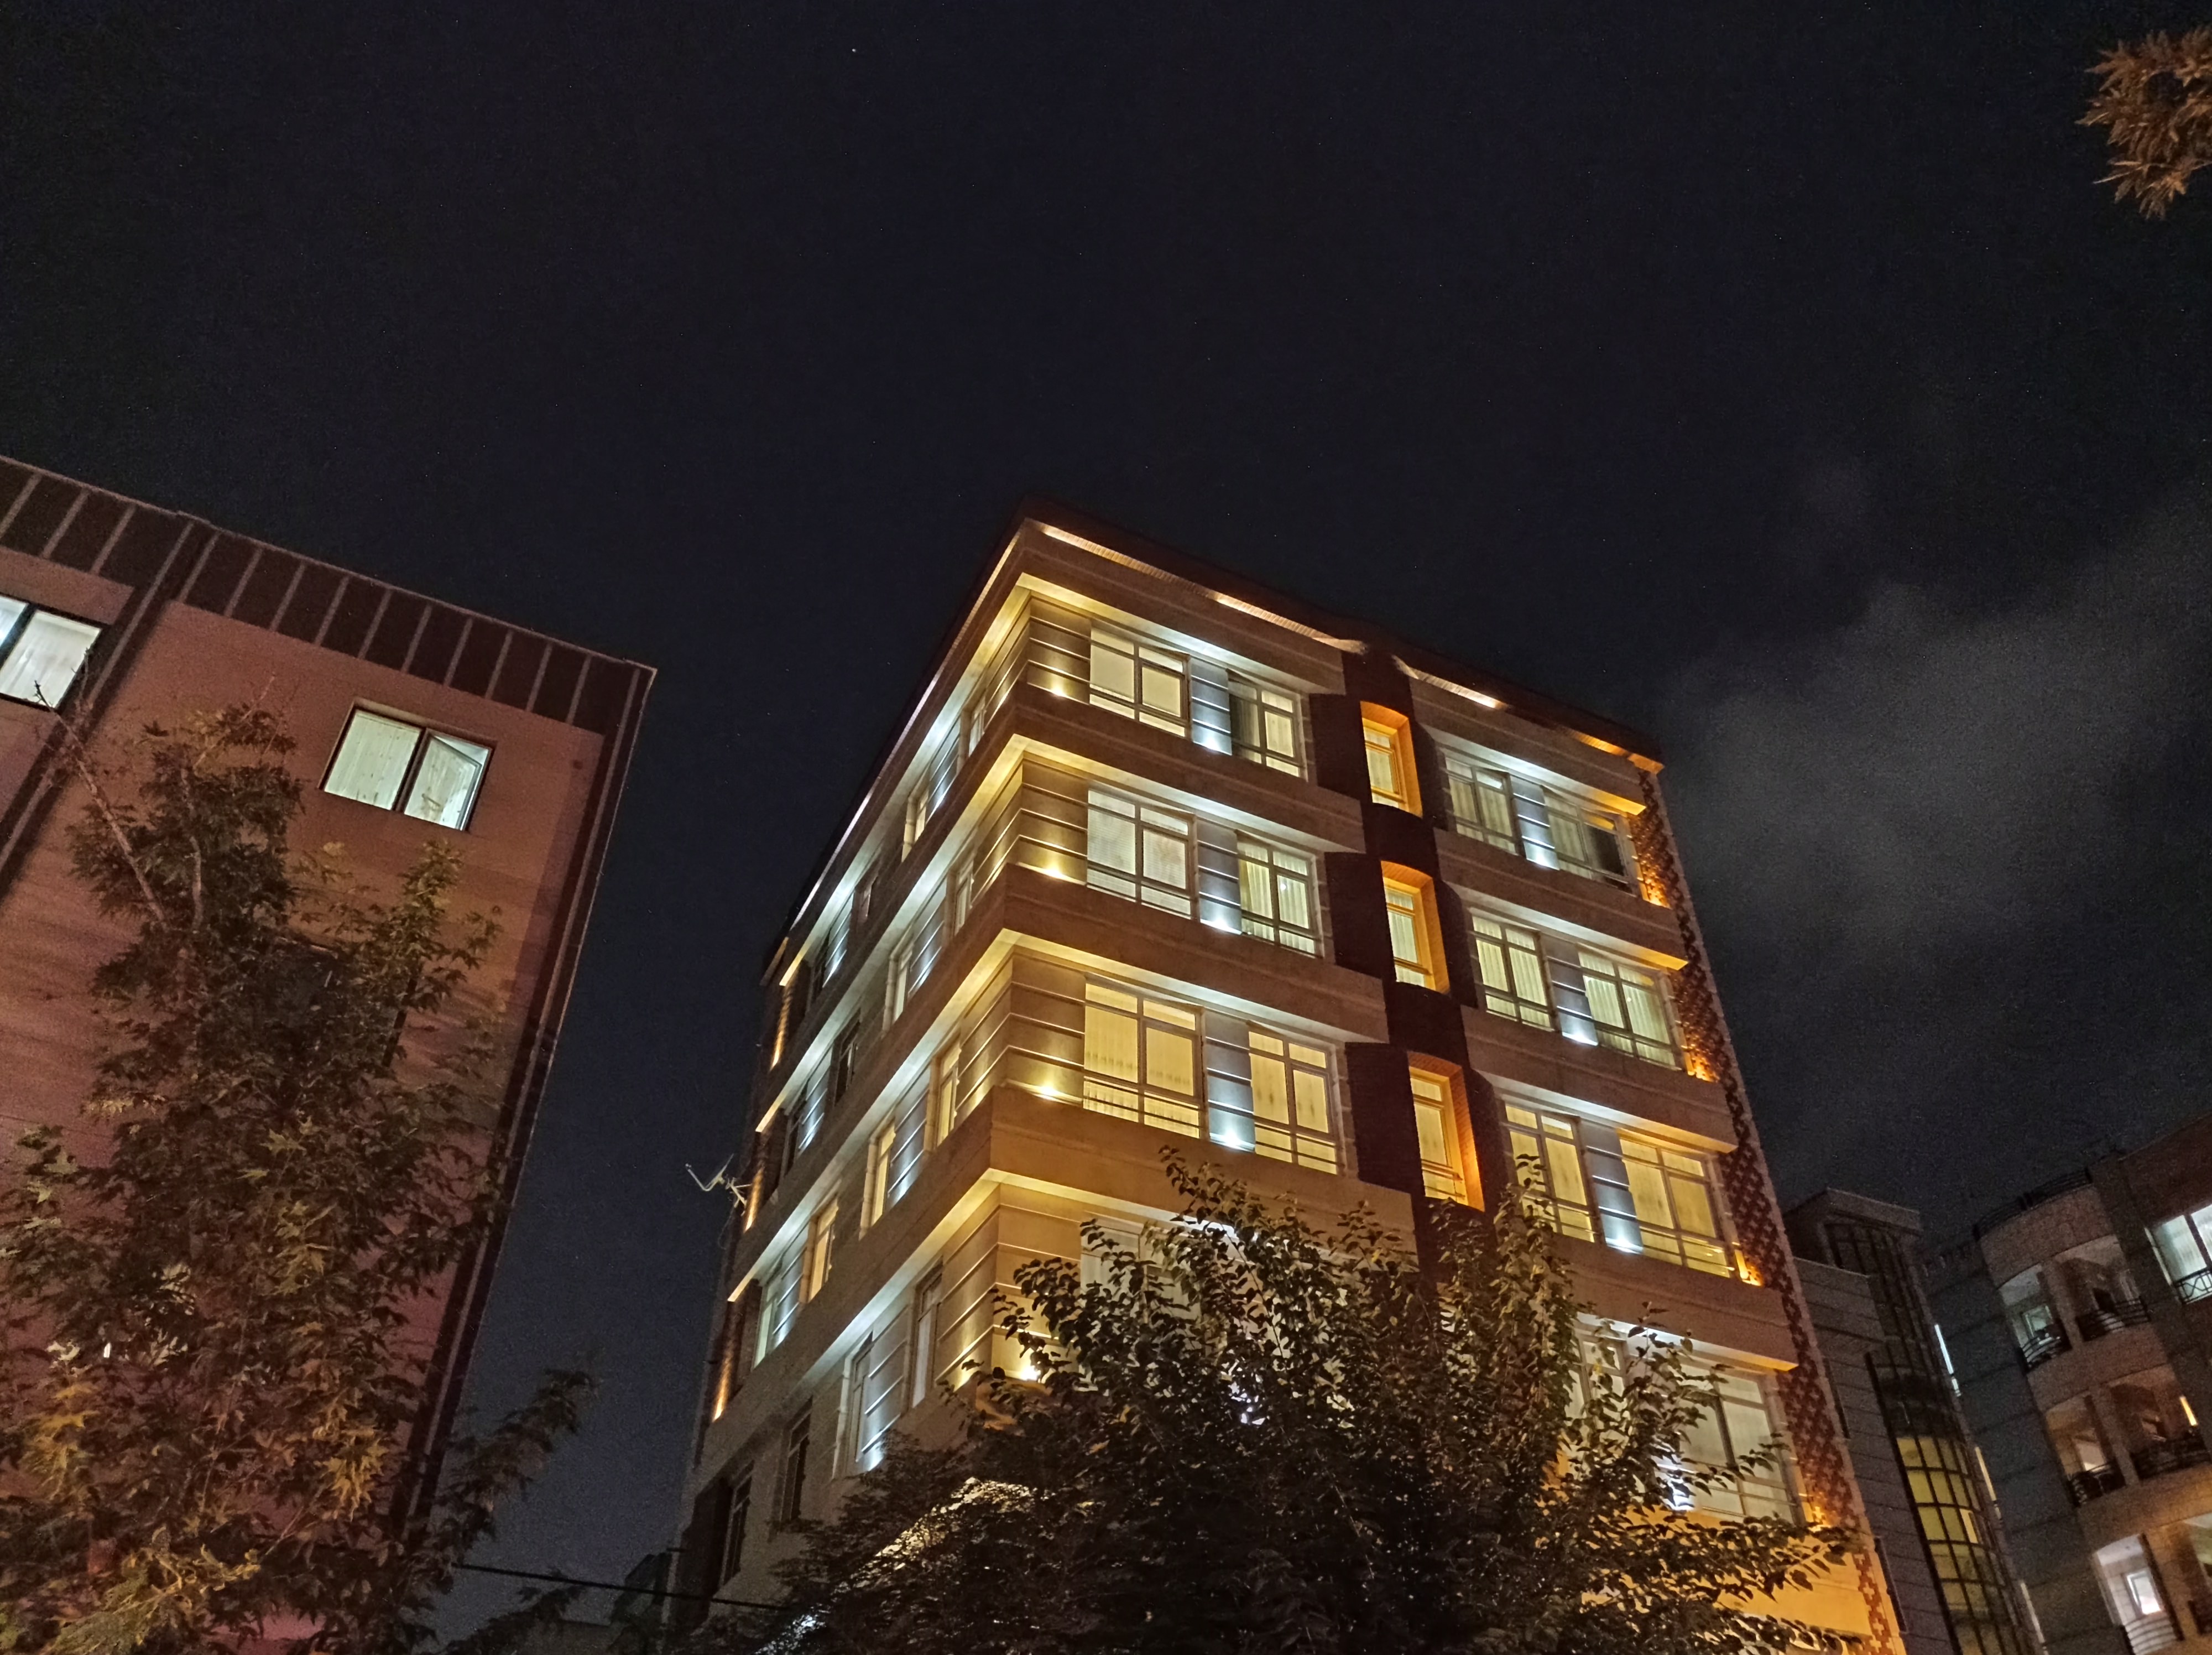 نمونه عکس 1x دوربین اصلی ردمی نوت ۹ در تاریکی - ساختمان نارمک